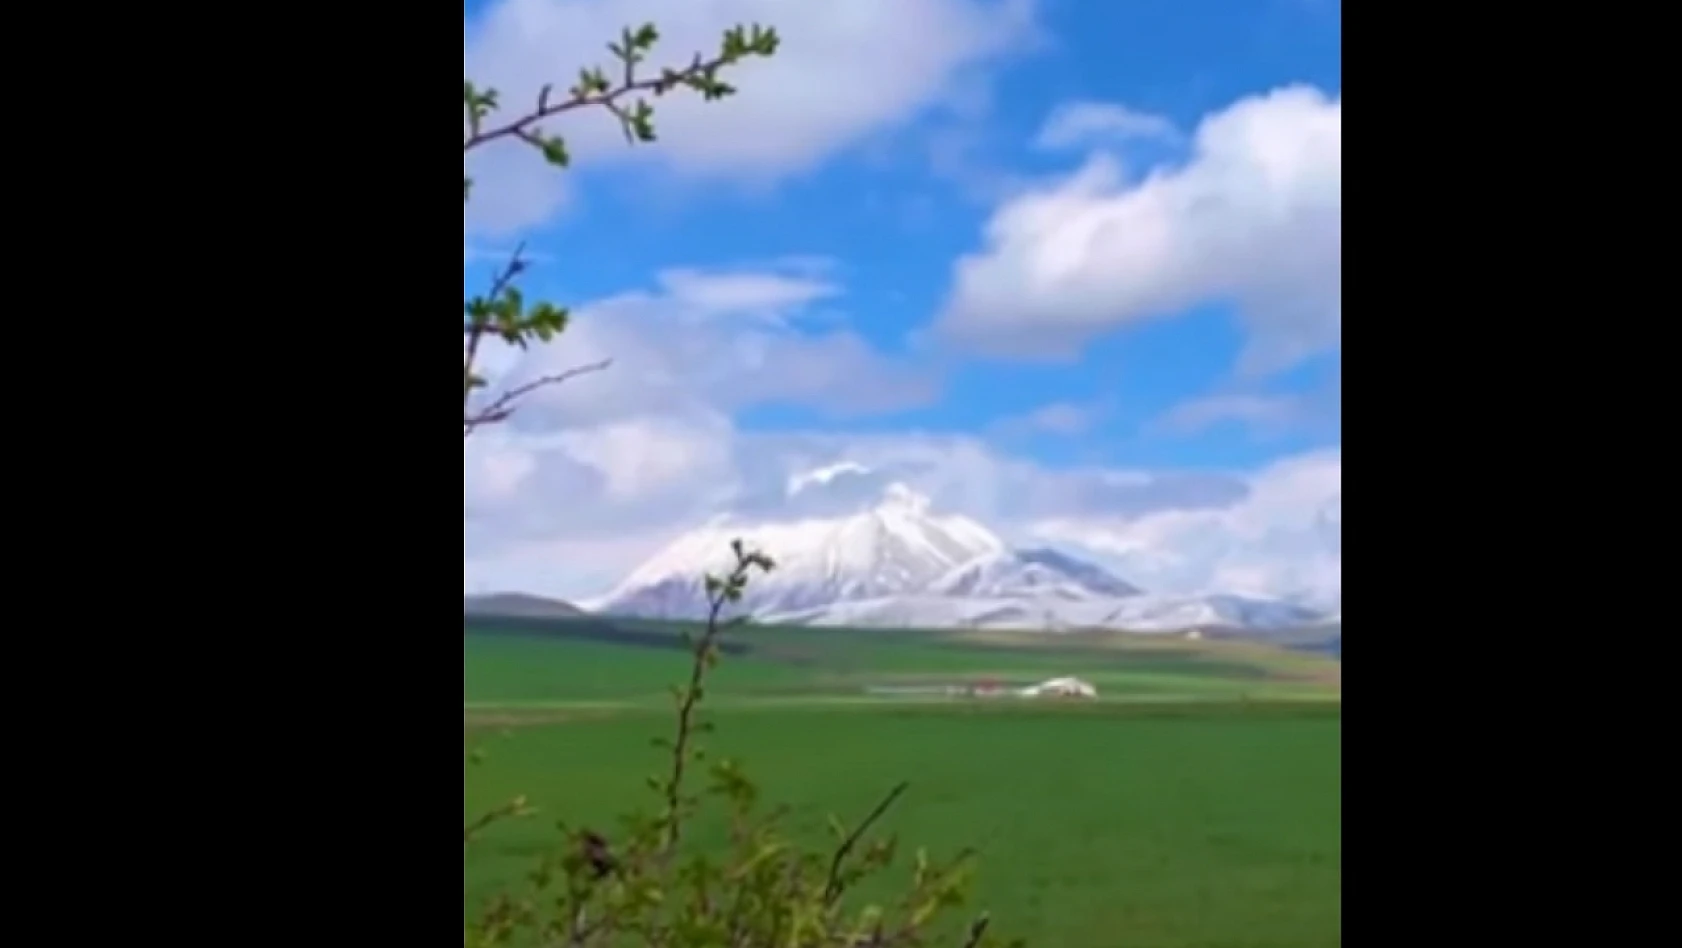 Ağrı'nın Eleşkirt ilçesindeki 3 bin 433 metre yüksekliğe sahip Kösedağ karla kaplandı